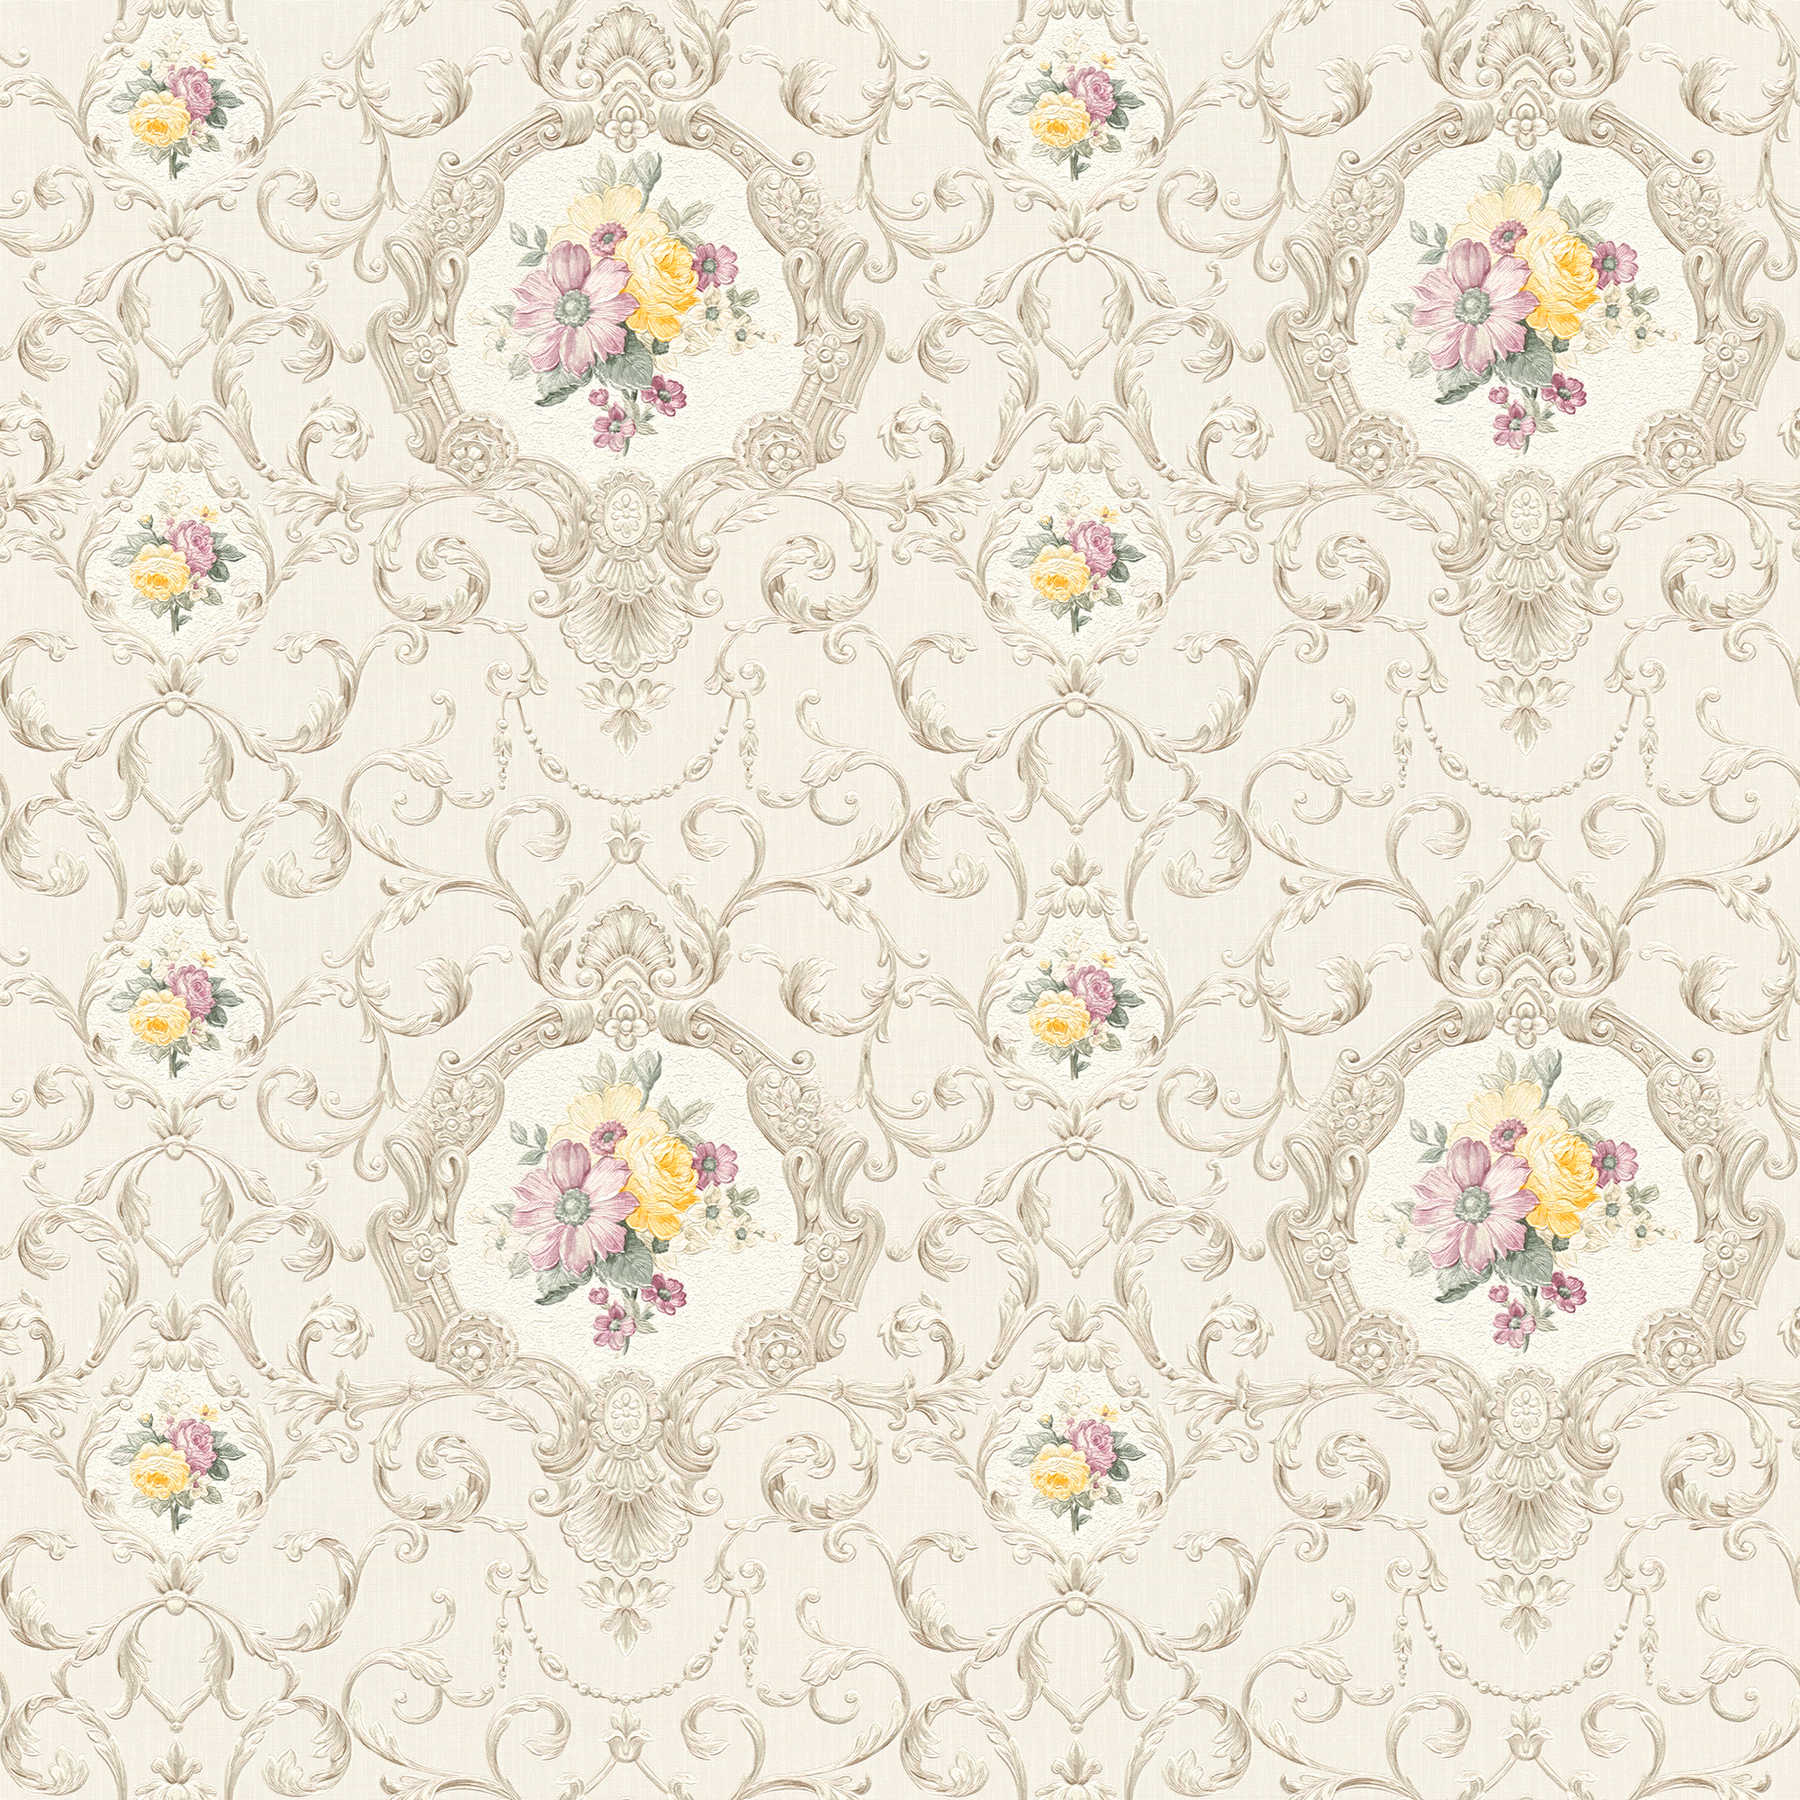 Papier peint néo-baroque motif floral ornemental - multicolore, crème
